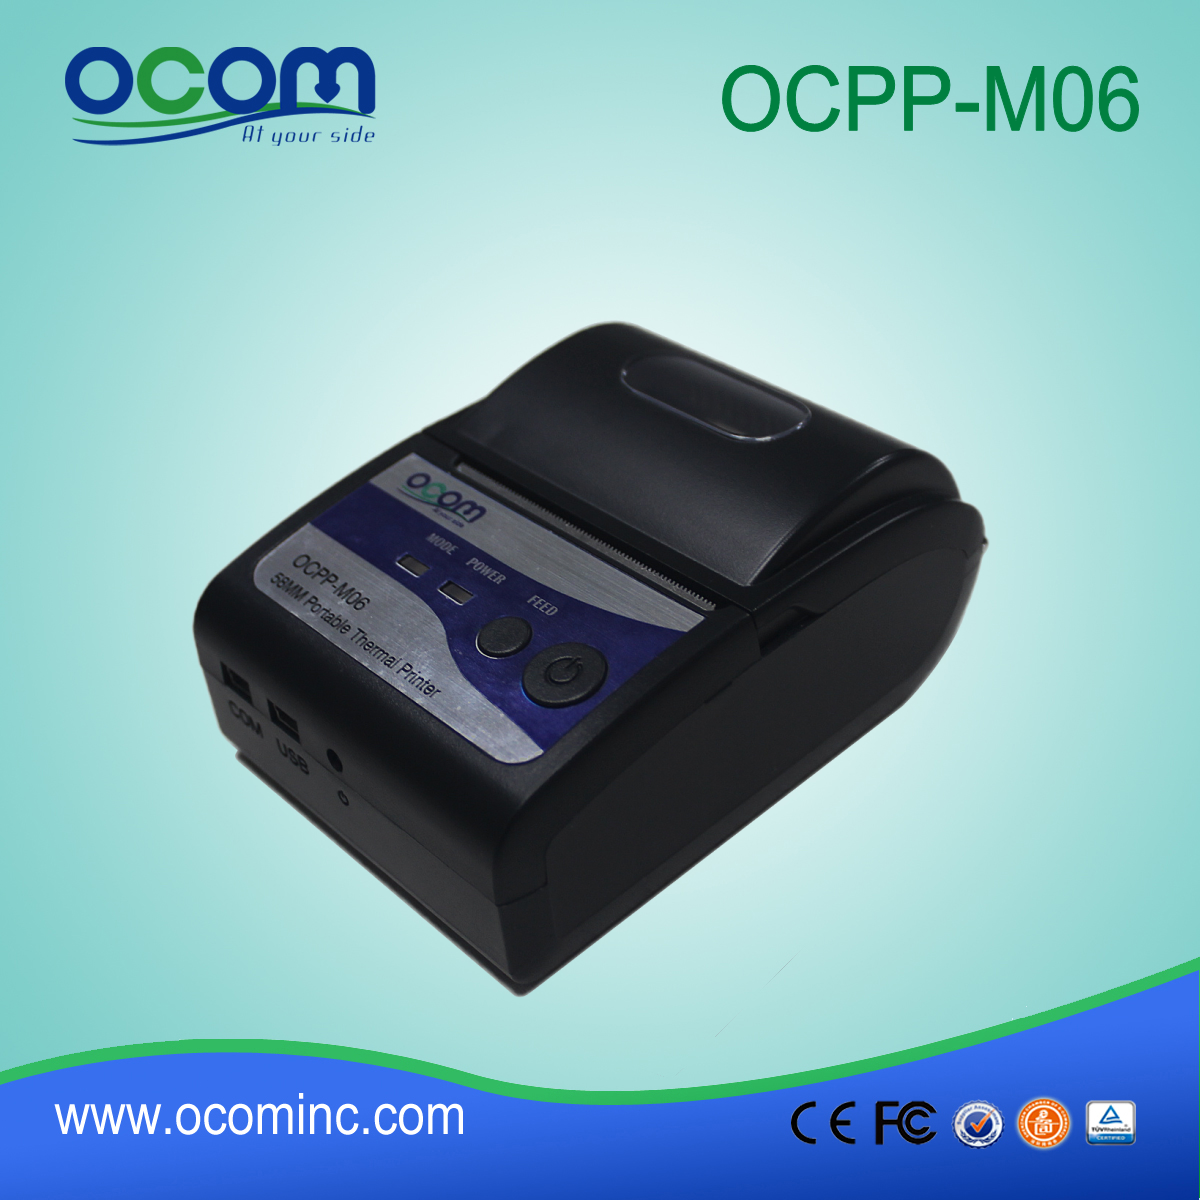 OCPP-M06: قدمت الصين نوعية جيدة OCOM 58mm ونقاط البيع الطابعة طابعة حرارية